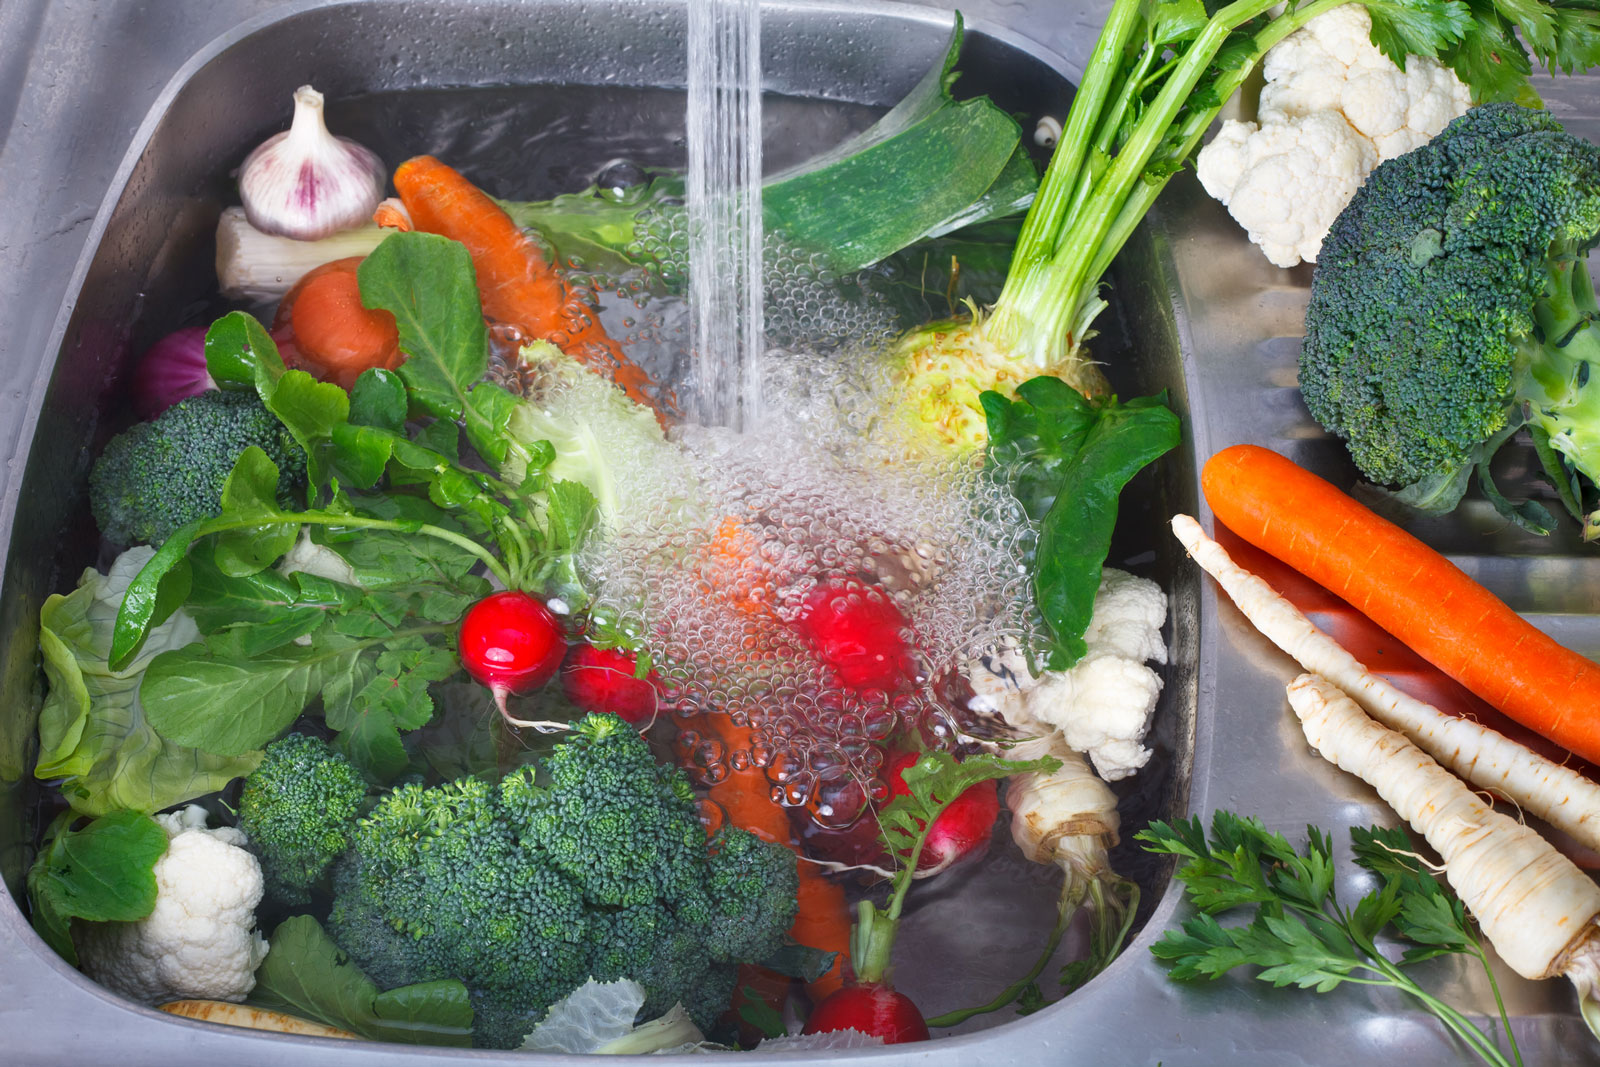 ضع الفاكهة والخضروات في ماء ساخن لمدة لا تقل عن 15 دقيقة 